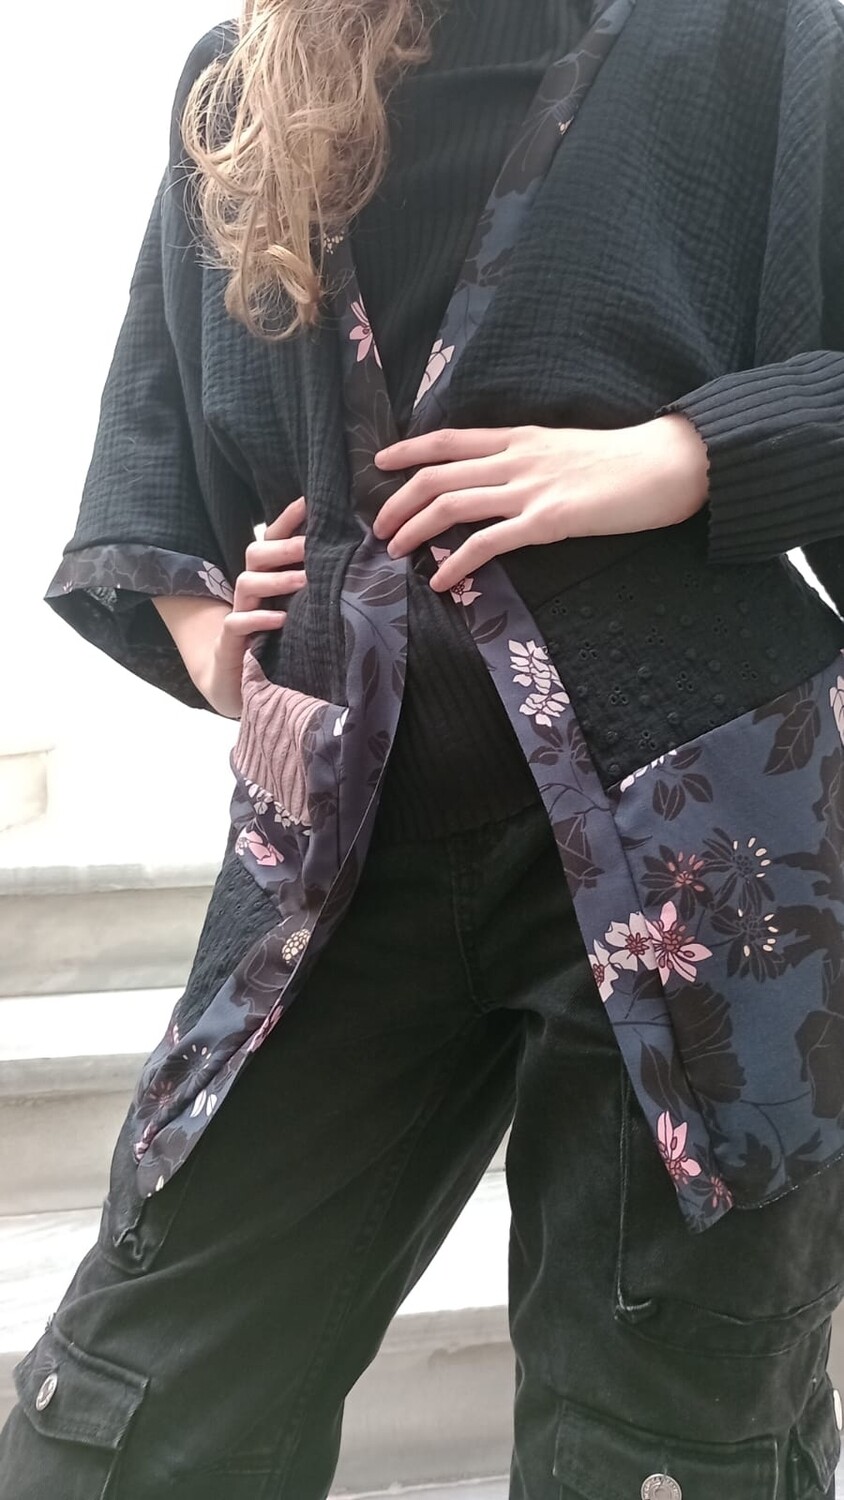 HUMUS kimono in doppia garza di cotone nero, fantasia blu scuro con fiori rosa e maglina a coste rosa e sangallo nero. 